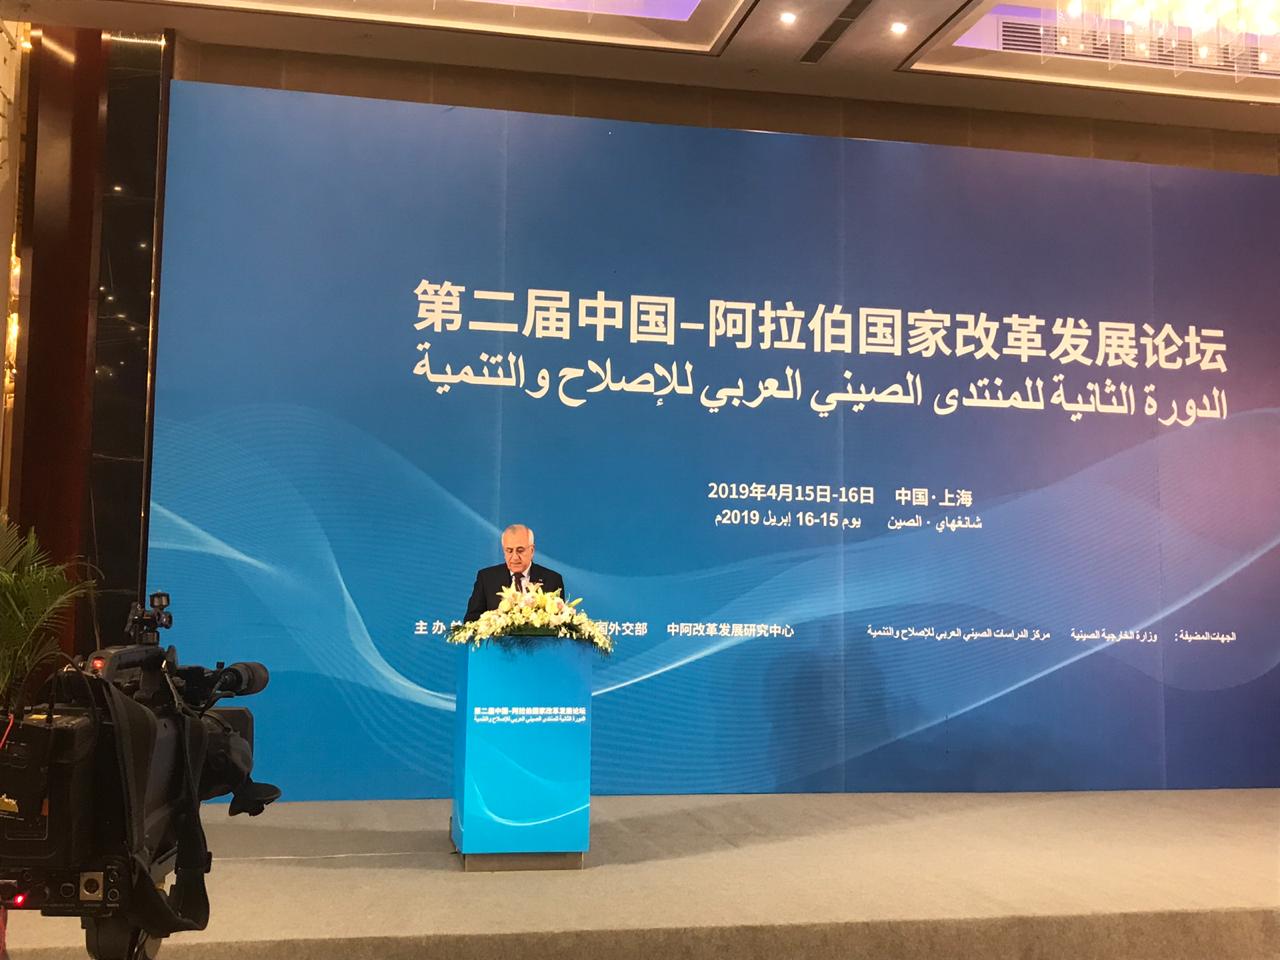 كلمة الرئيس سليمان في الجلسة الافتتاحية للدورة الثانية للمنتدى الصيني - العربي للإصلاح والتنمية المنعقد في شانغهاي بتاريخ 16 نيسان 2019